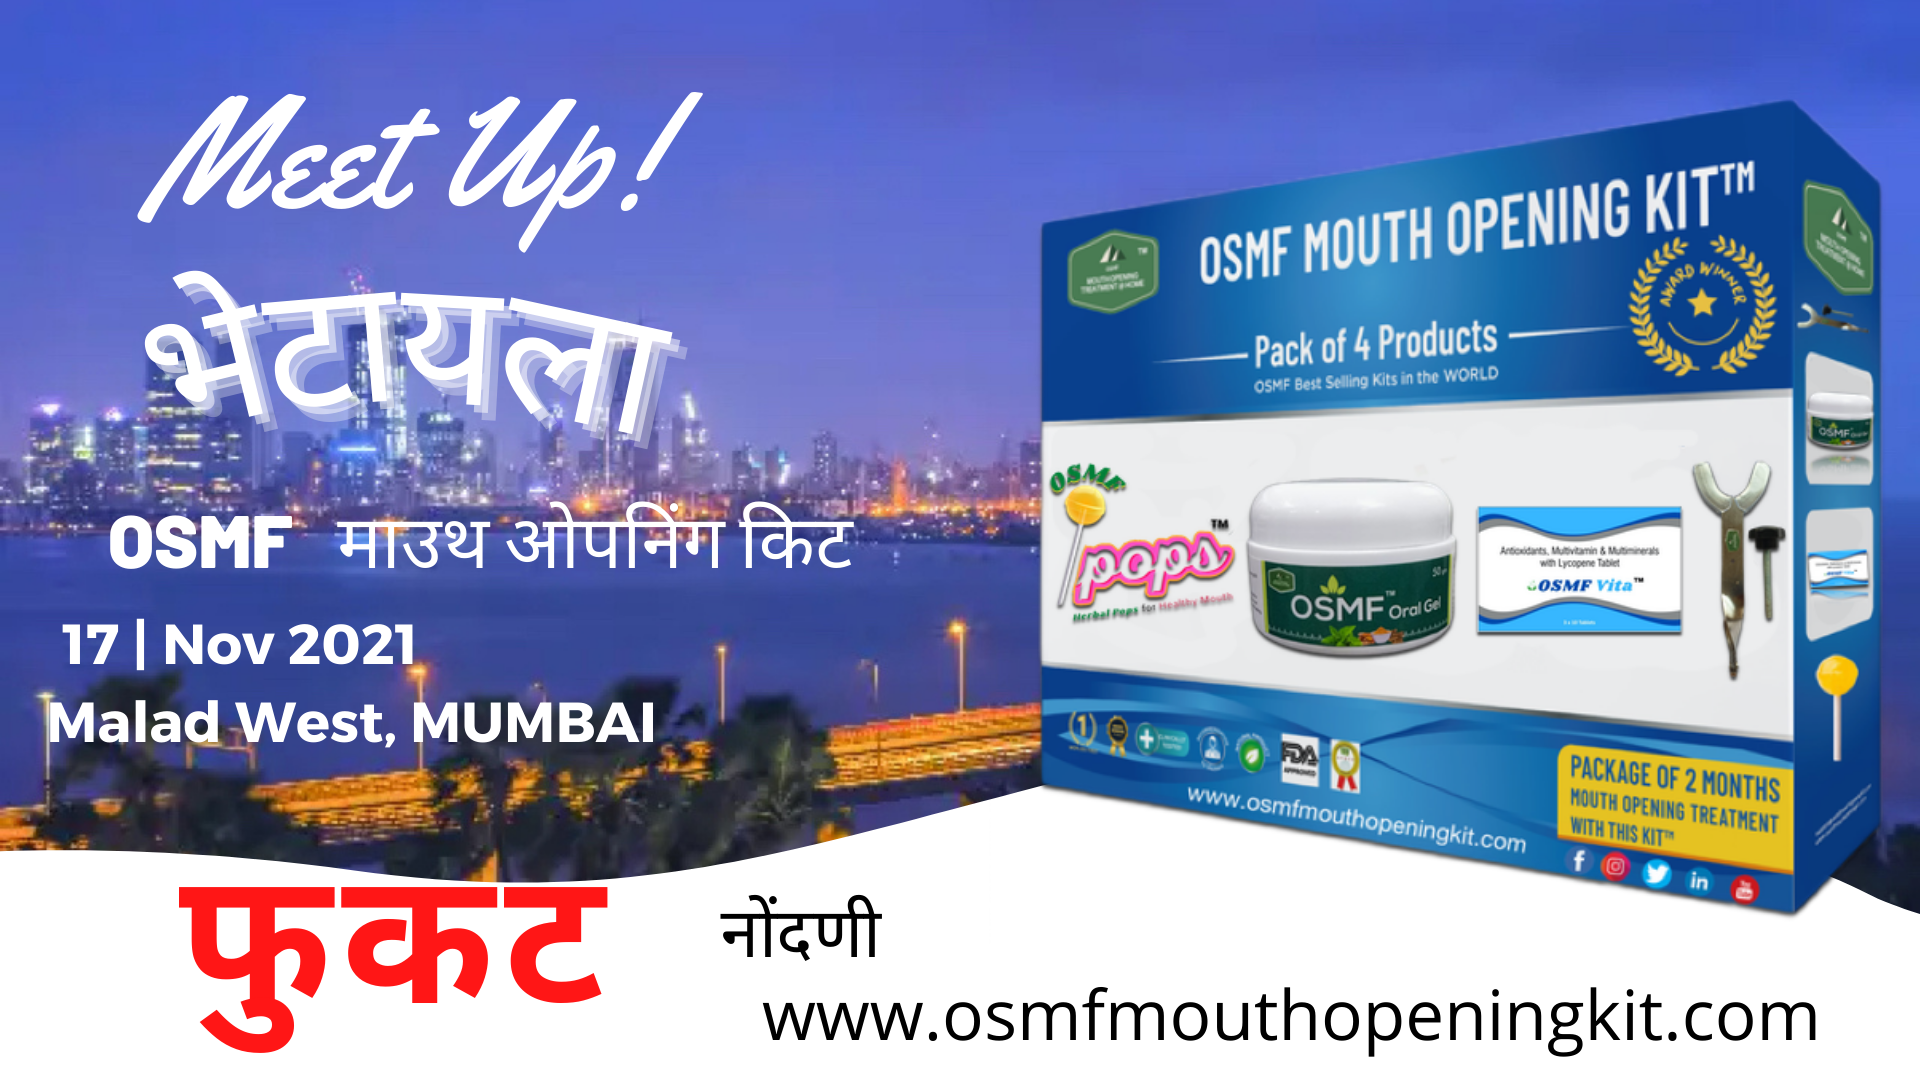 malad west Mumbai best meetup OSMF Mouth opening Kit Bombay